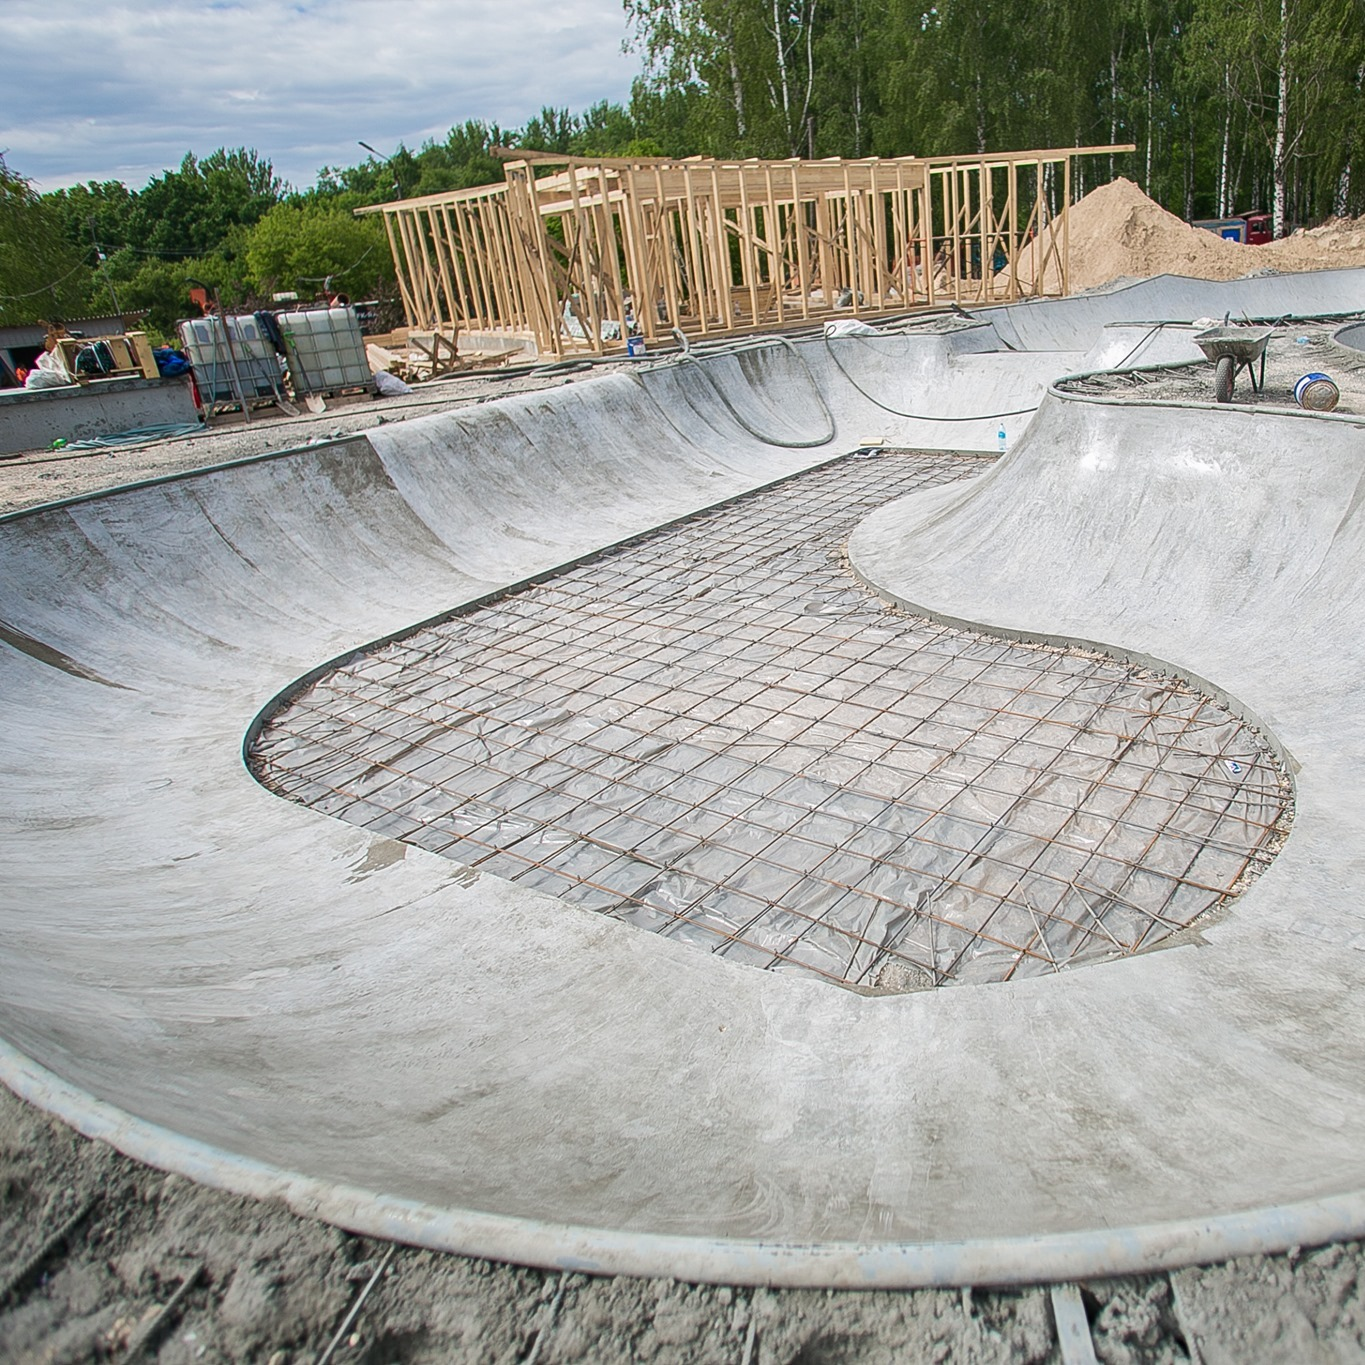 Скейт-парк площадью 1600 кв. м появится в нижегородской “Швейцарии” к 15 июня - фото 1